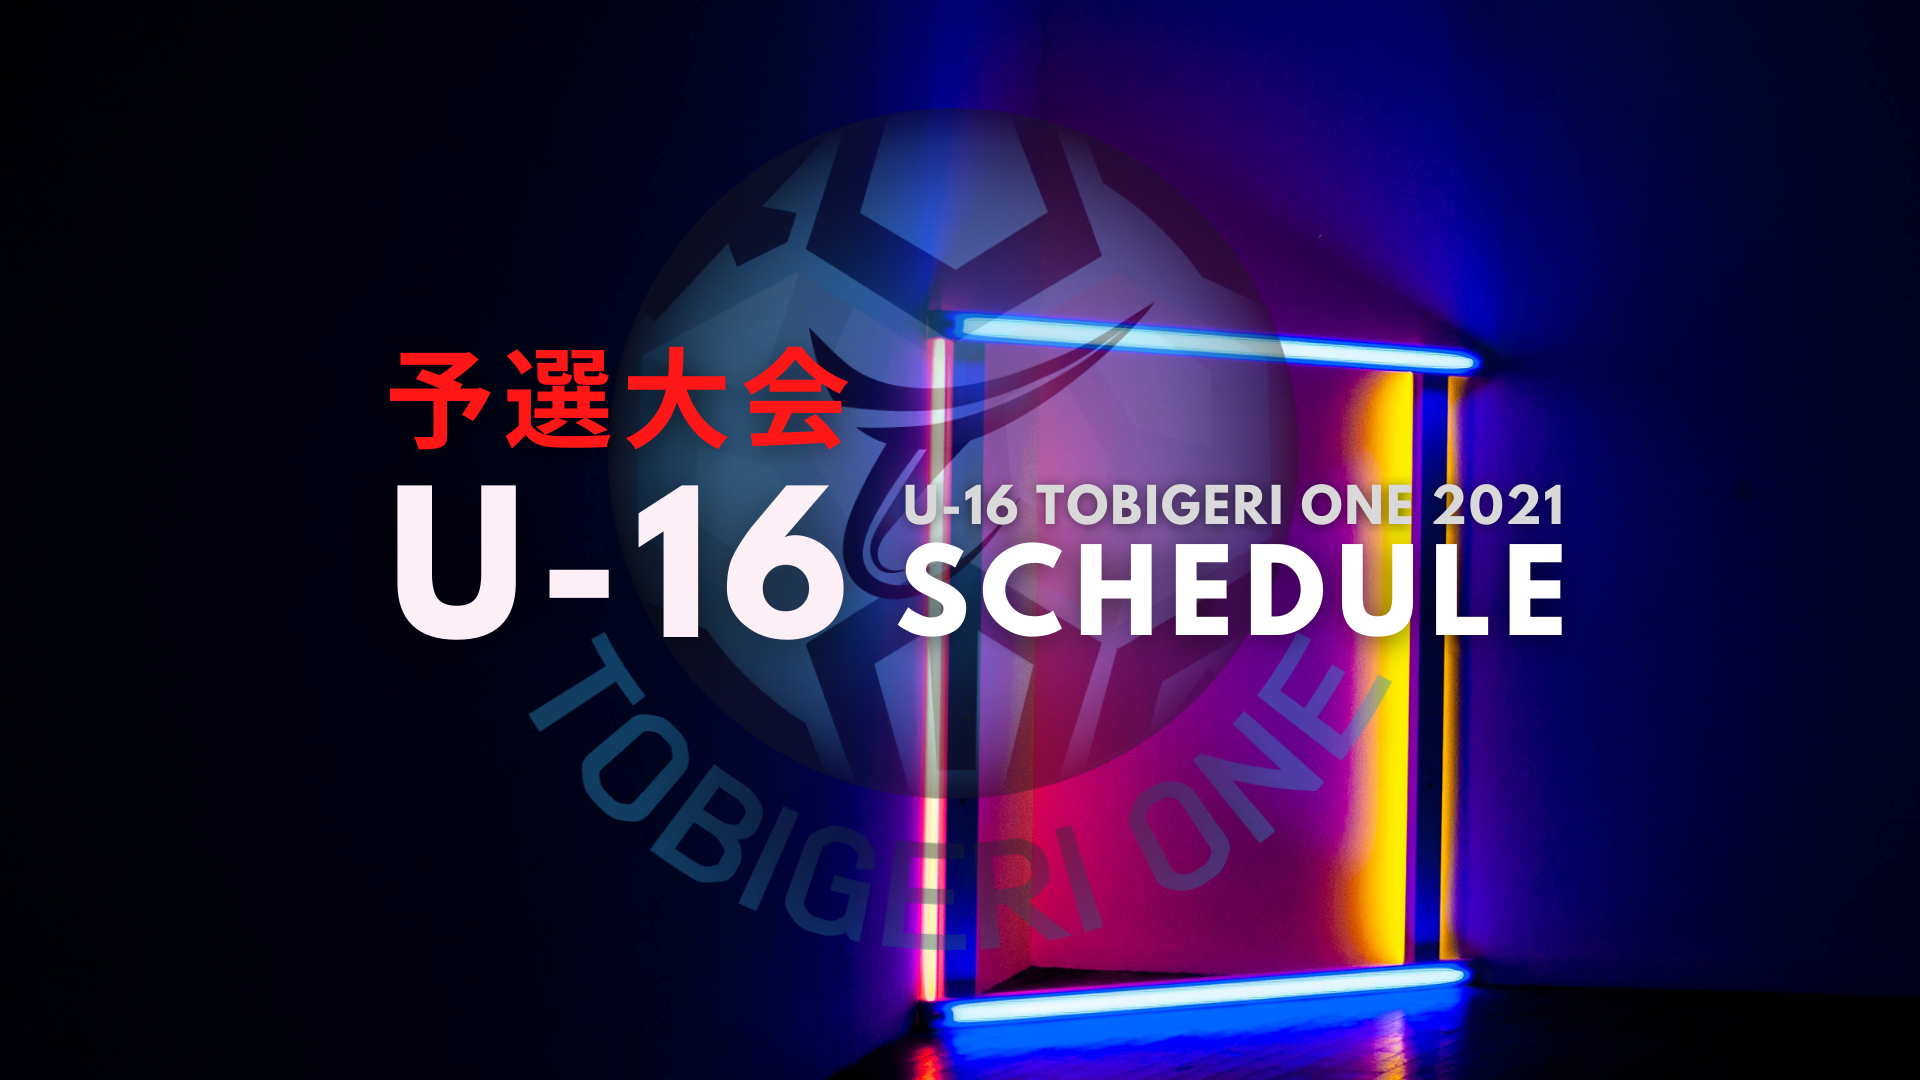 【U-16】予選大会 TOBIGERI ONE 2021 組合せスケジュールリリース✨